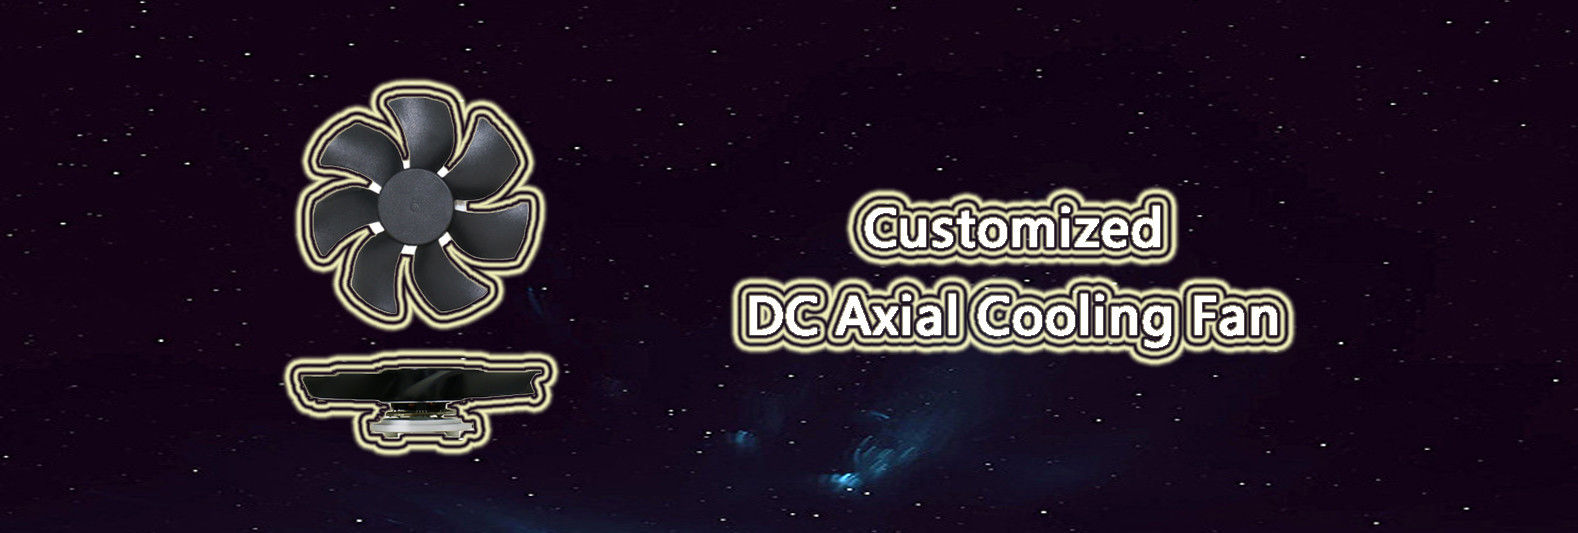 DC Axial Cooling Fan